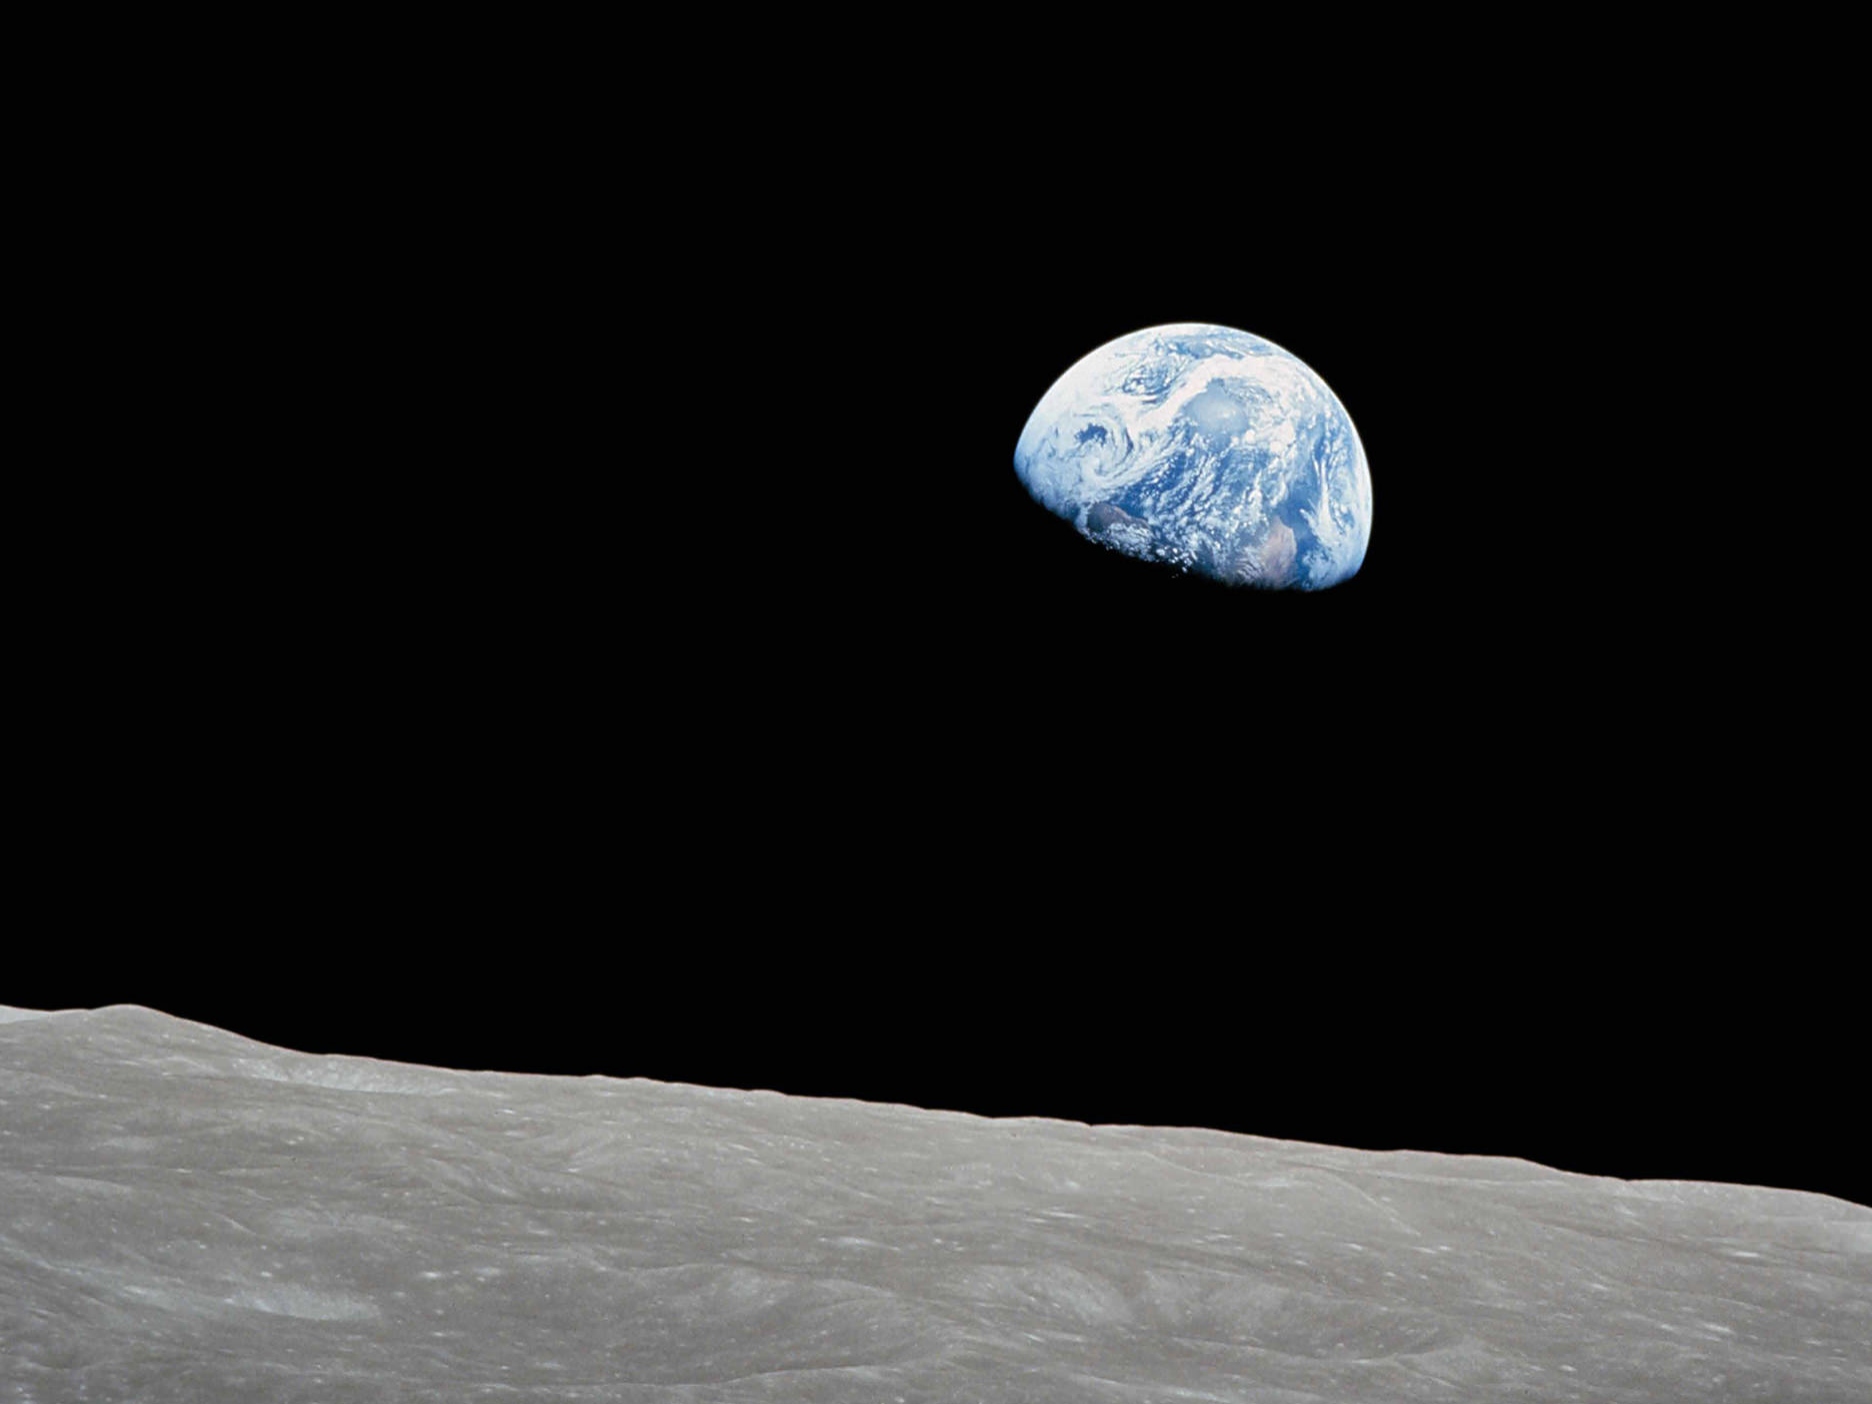 Perspectiva de estar mirando a la tierra desde la superficie de la luna.